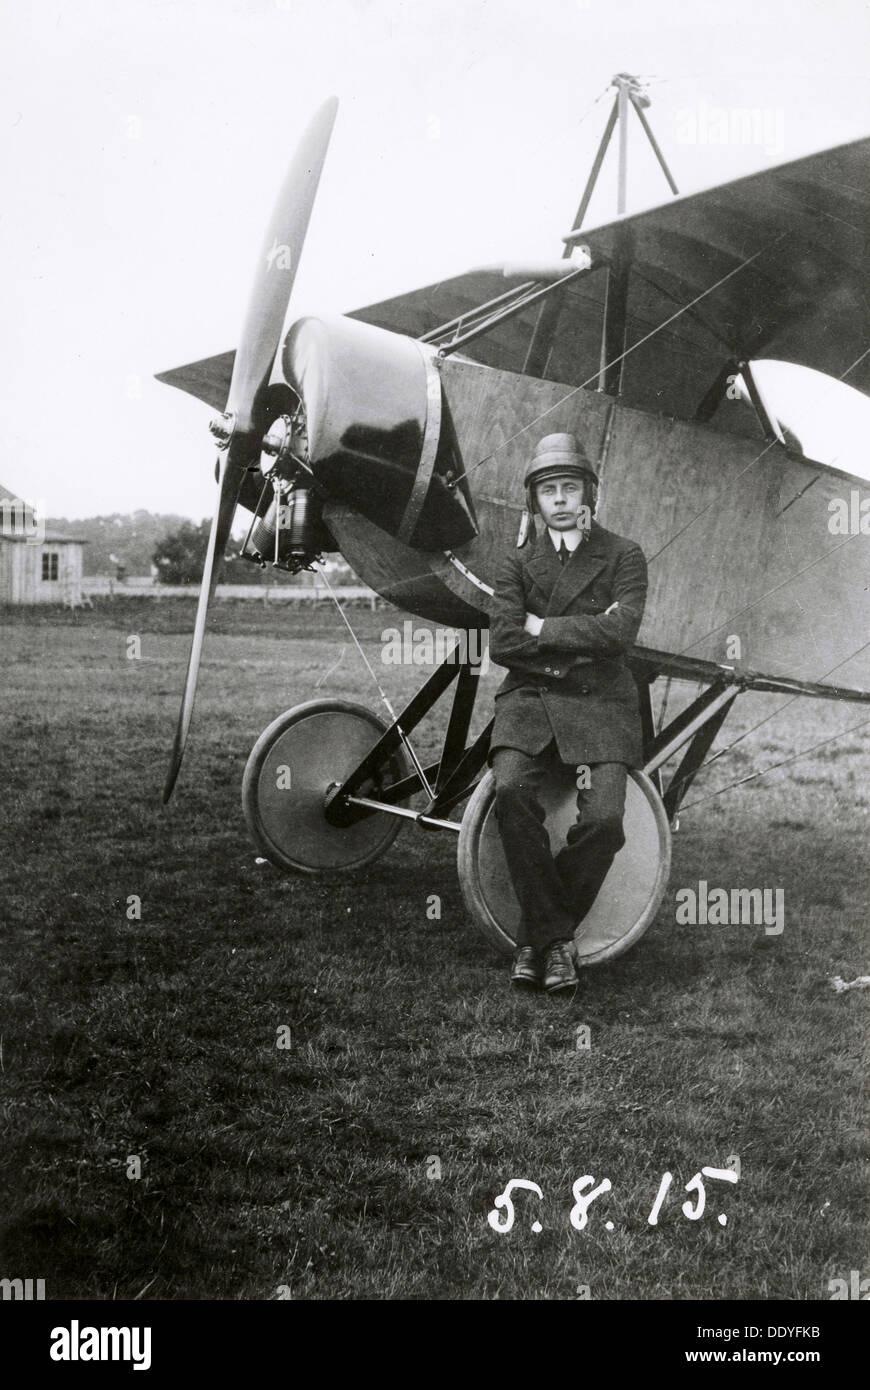 Enoc Thulin, aviador, Sueco Landskrona, Suecia, 1915. Artista: Desconocido Foto de stock